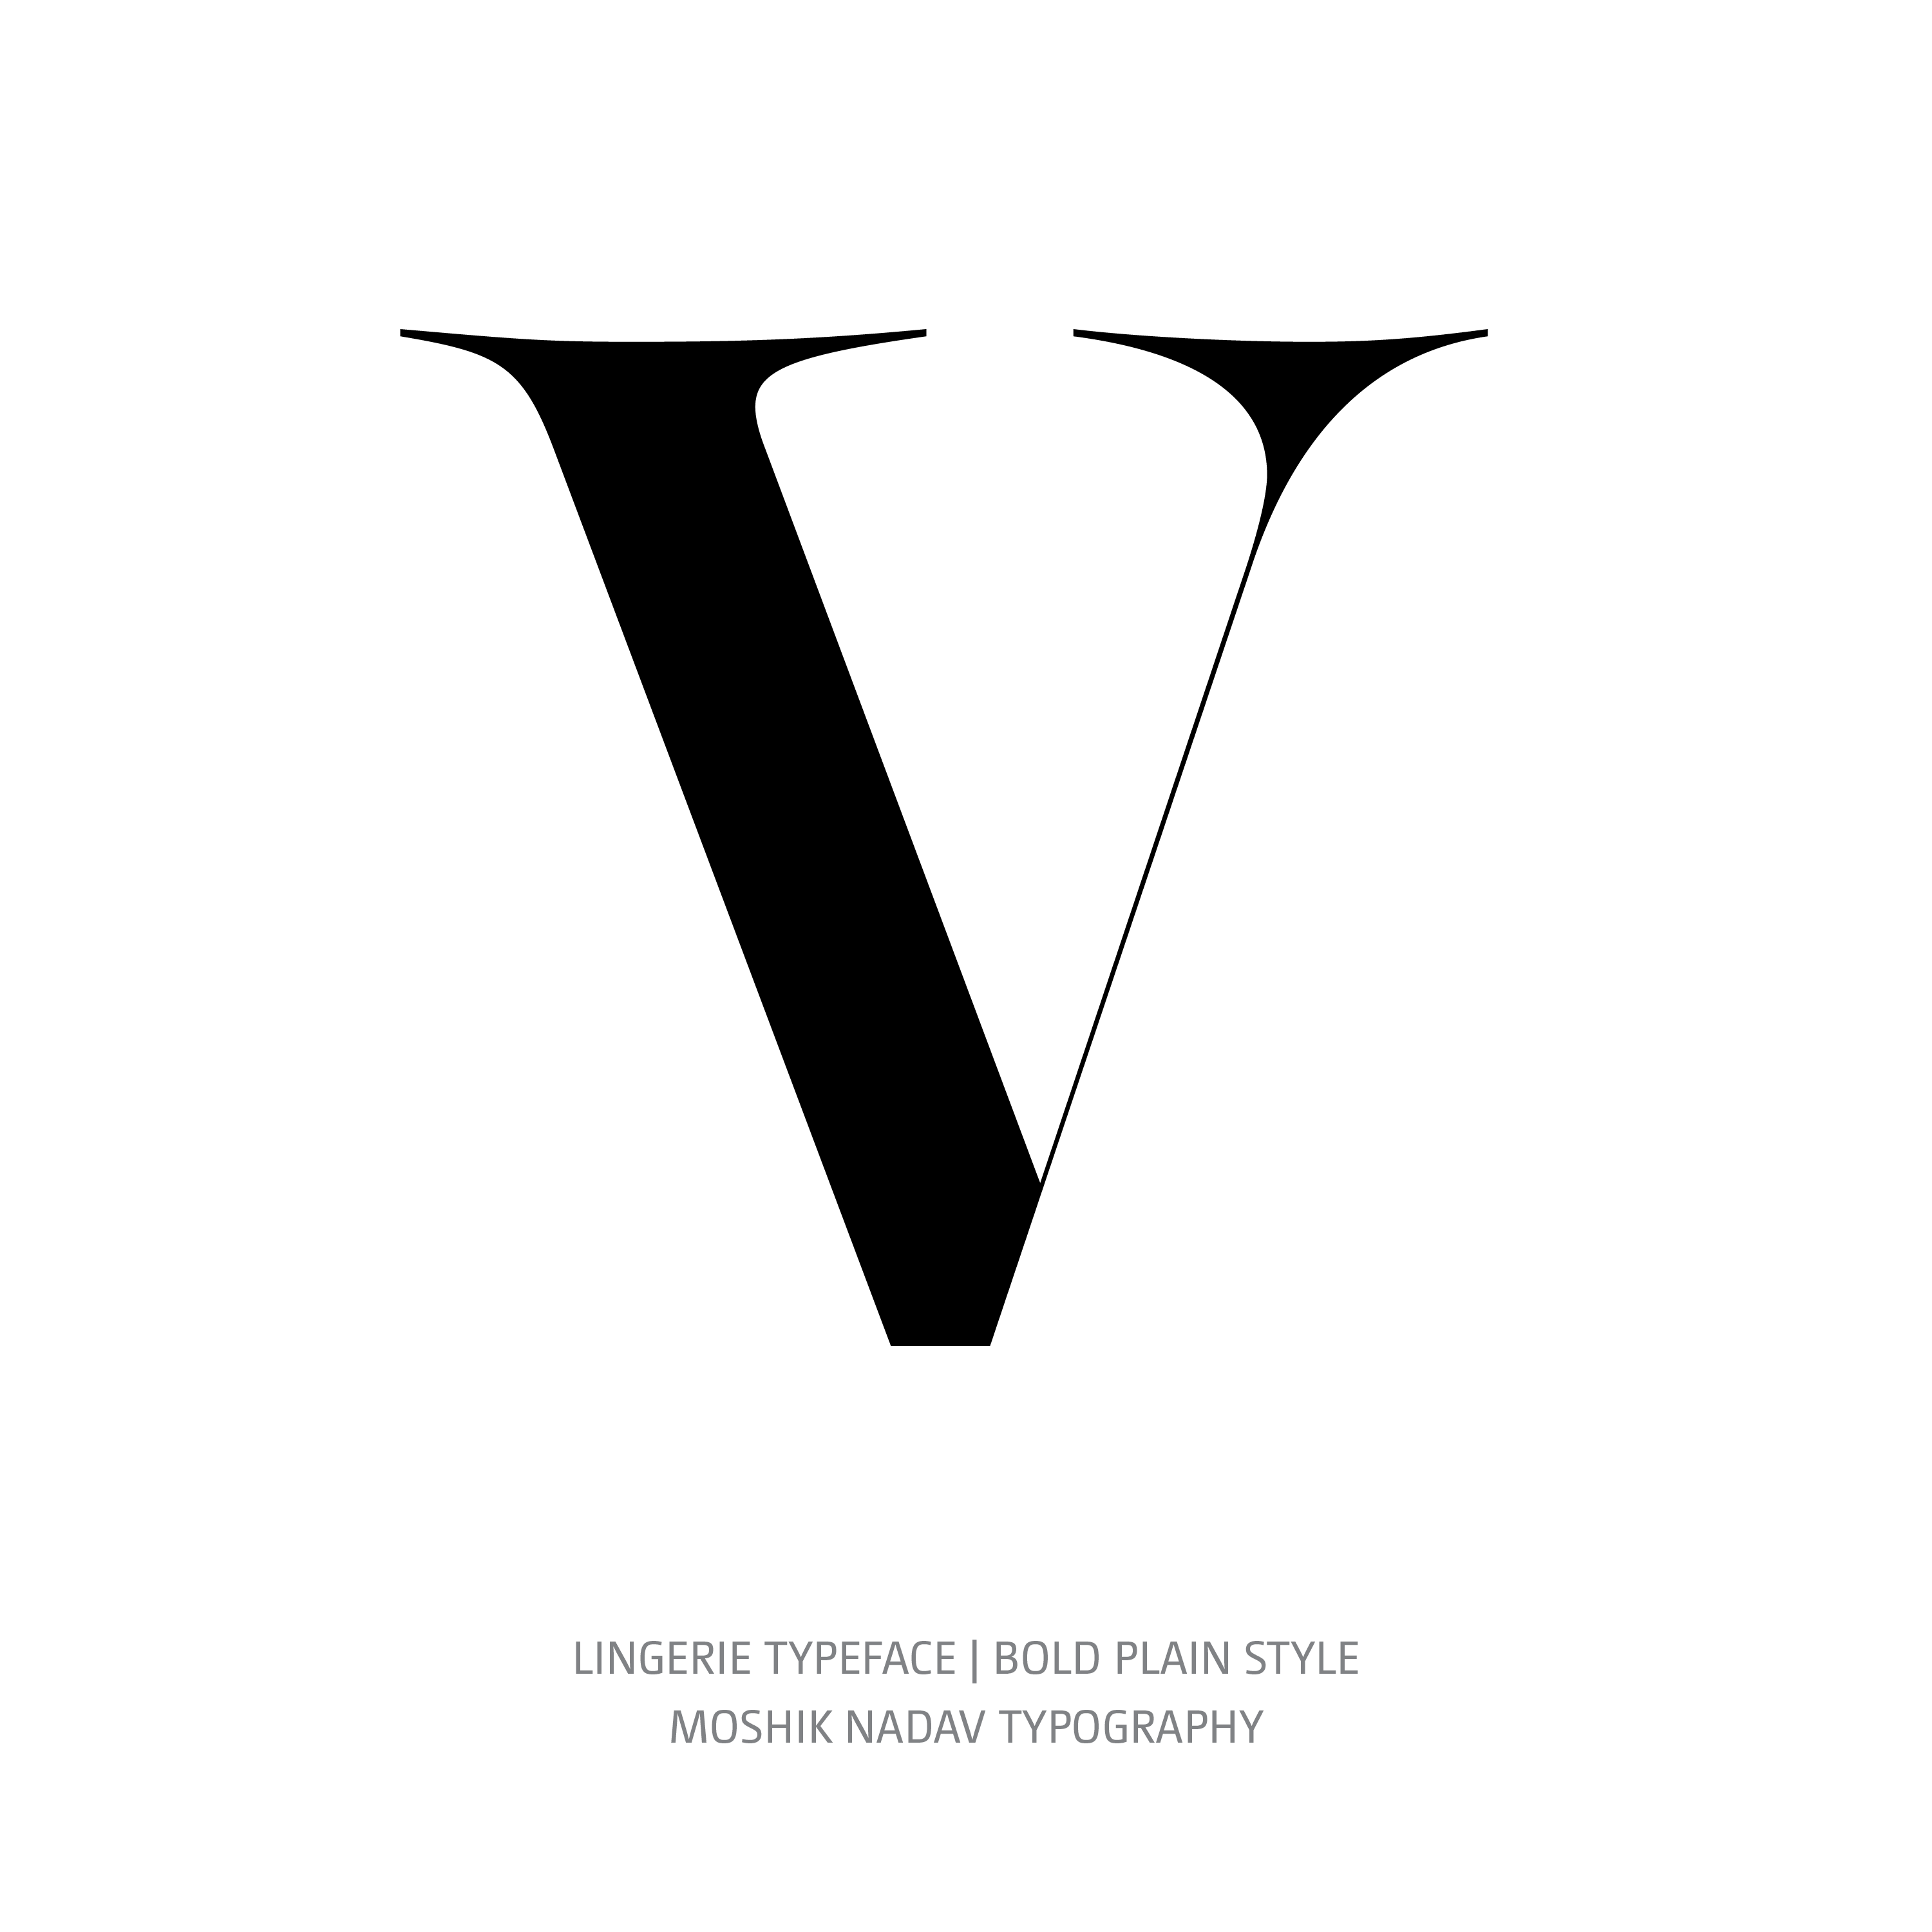 Lingerie Typeface Bold Plain V